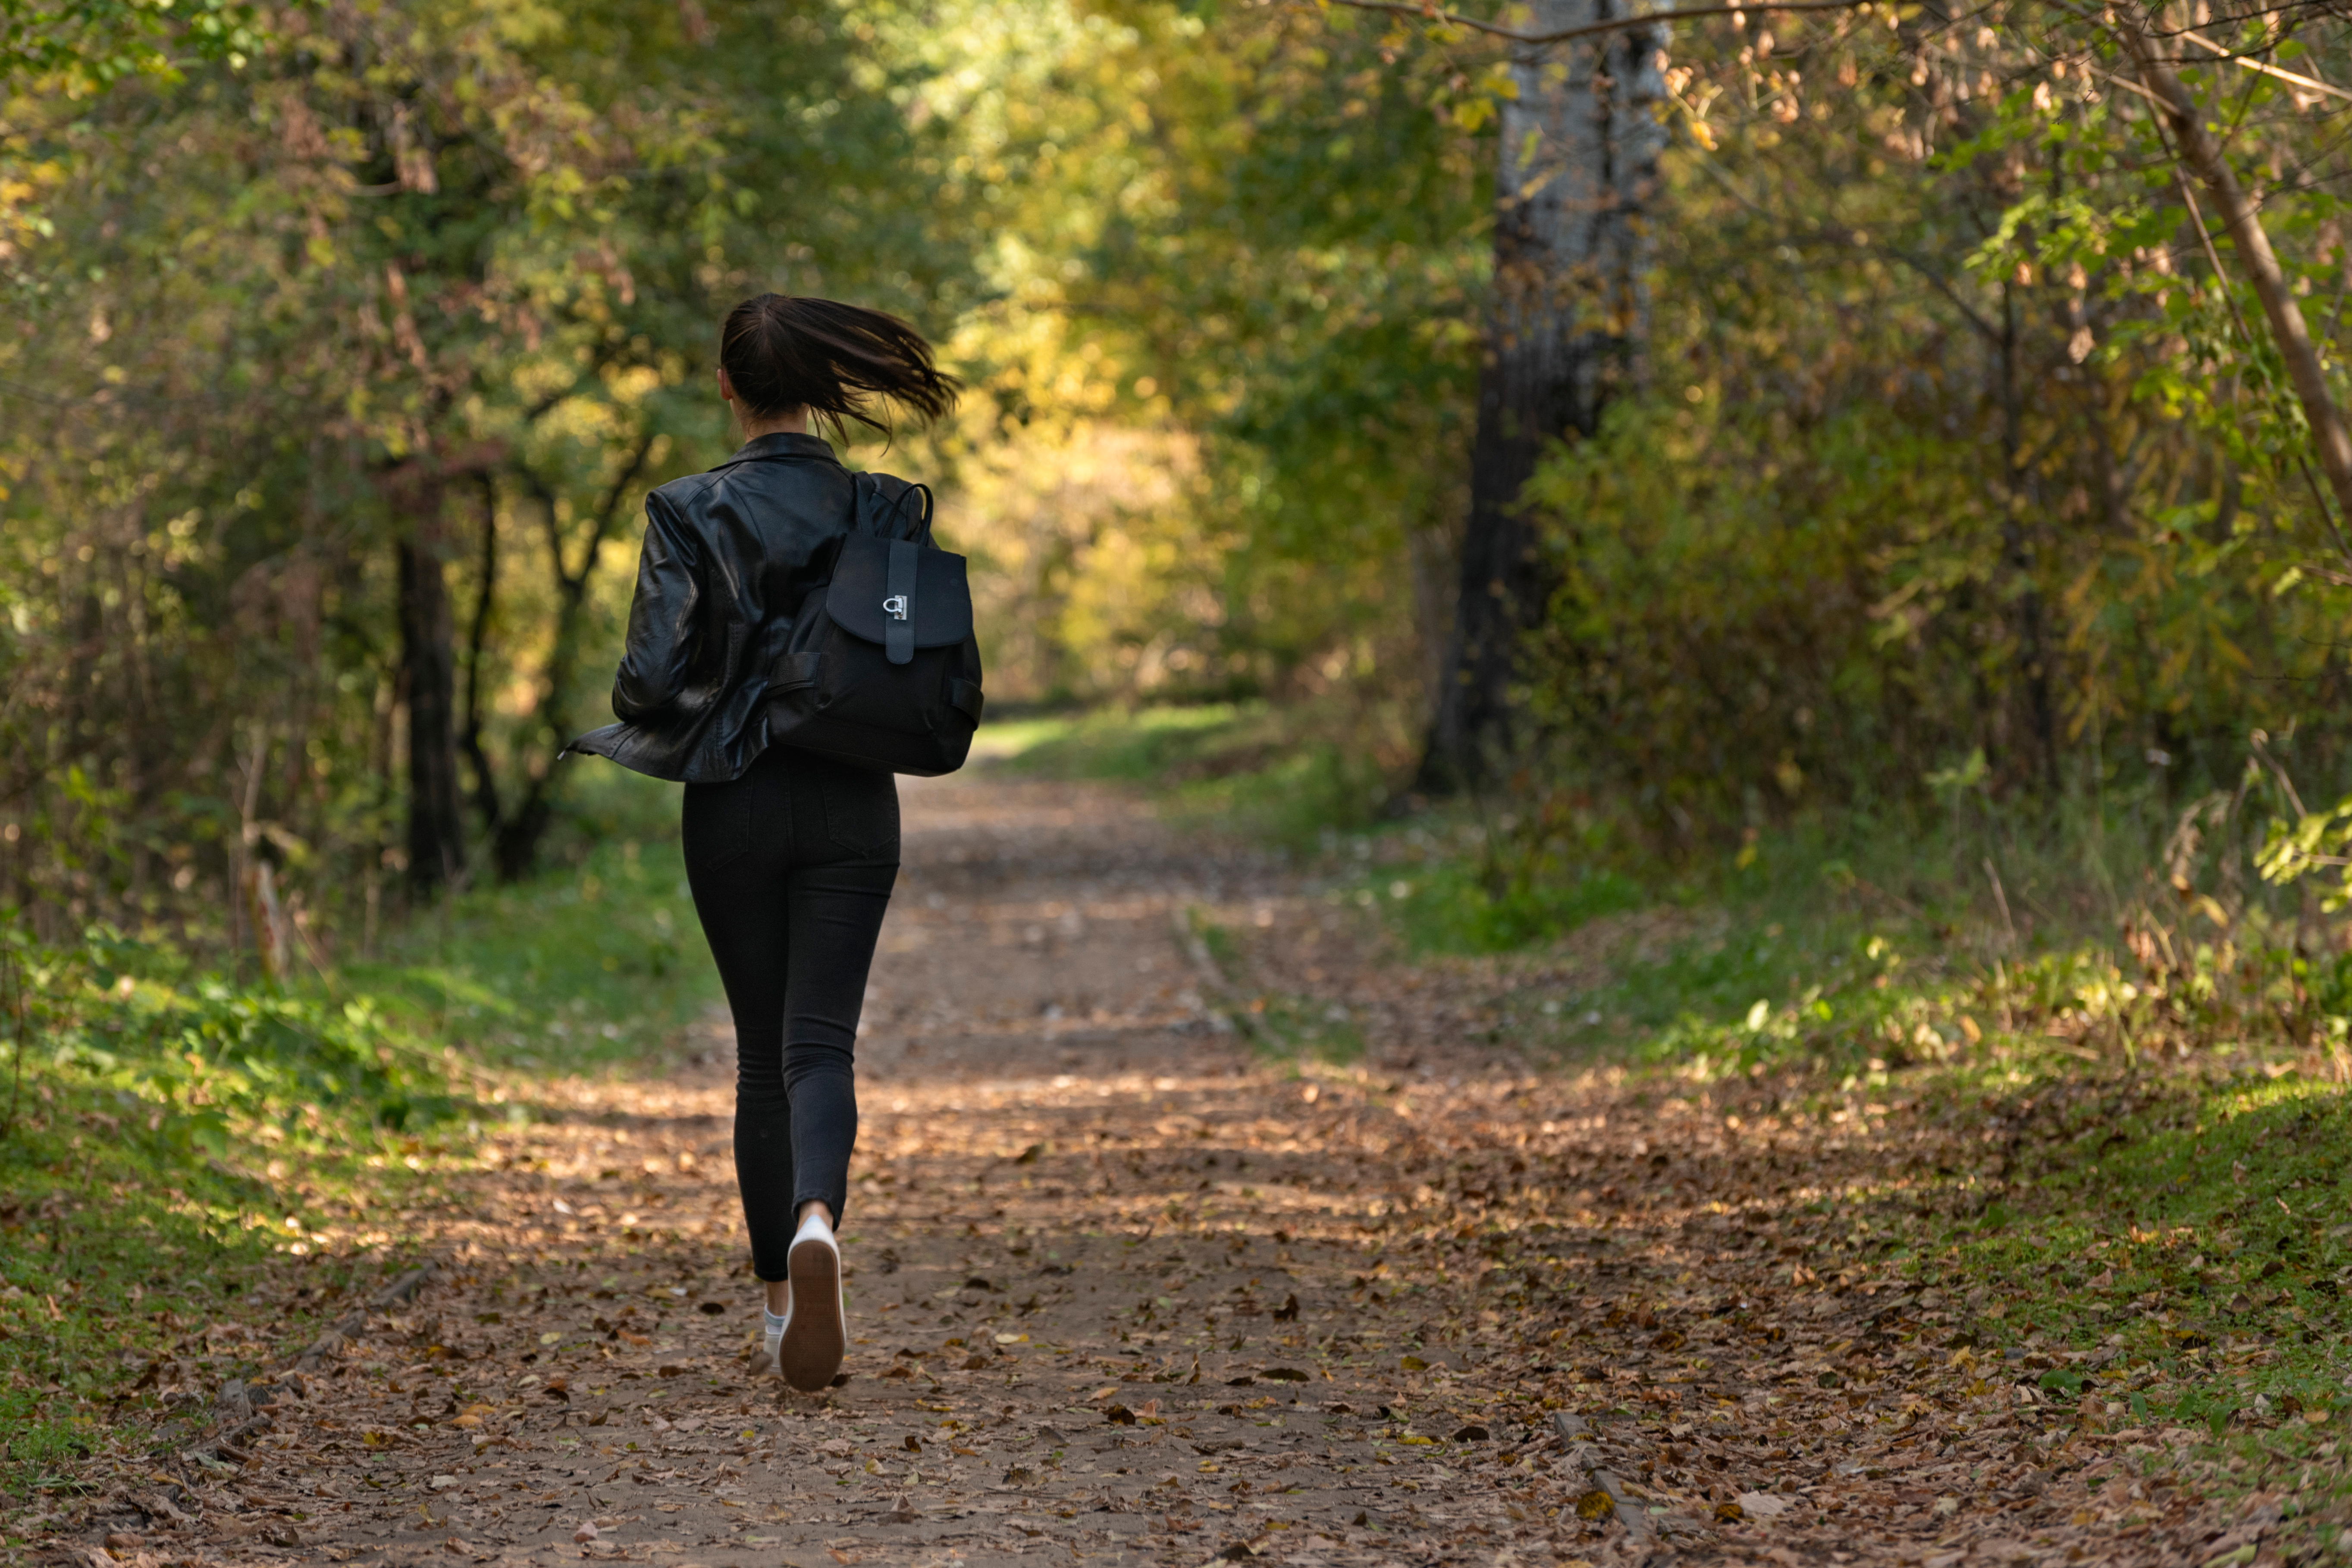 Frau läuft im Wald | Shutterstock